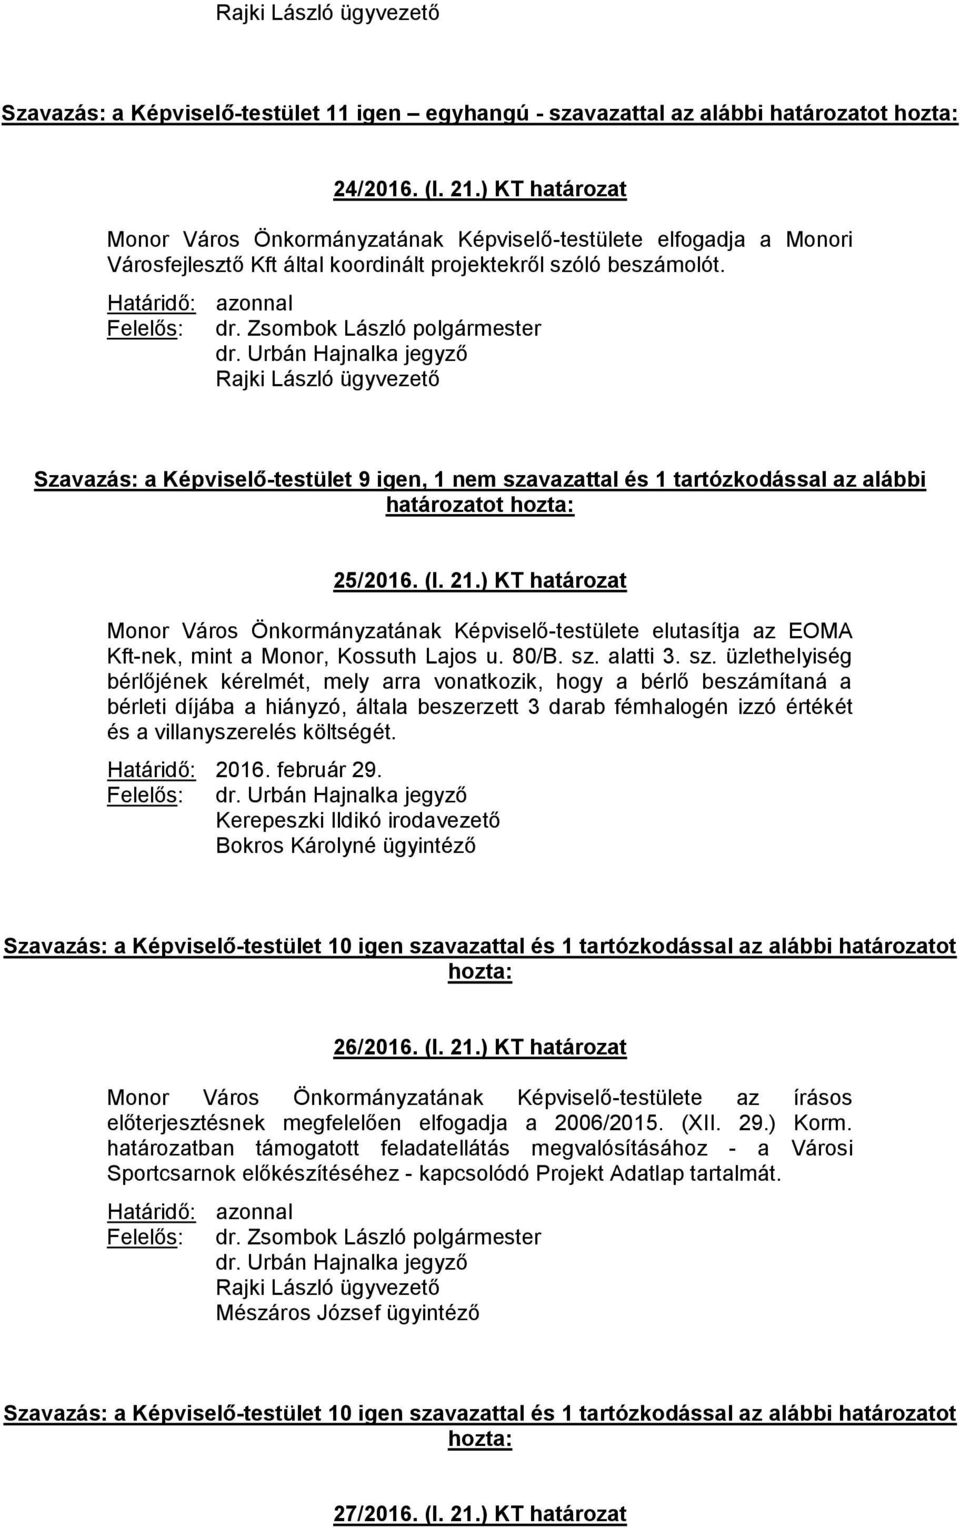 ) KT határozat Monor Város Önkormányzatának Képviselő-testülete elutasítja az EOMA Kft-nek, mint a Monor, Kossuth Lajos u. 80/B. sz.